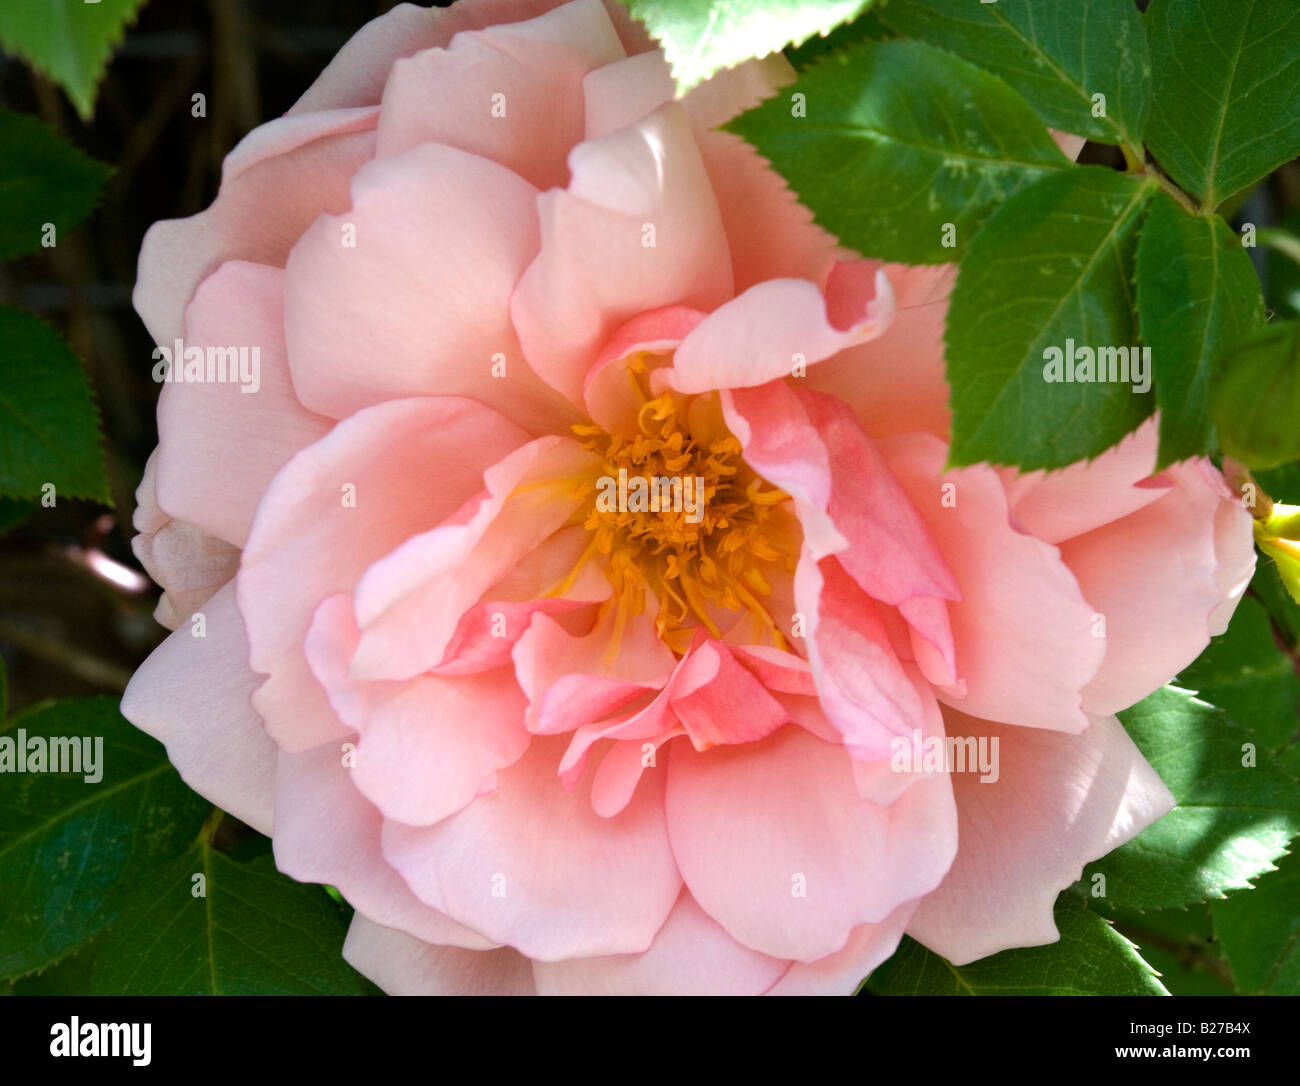 Flower of Rambling Rose Albertine Stock Photo